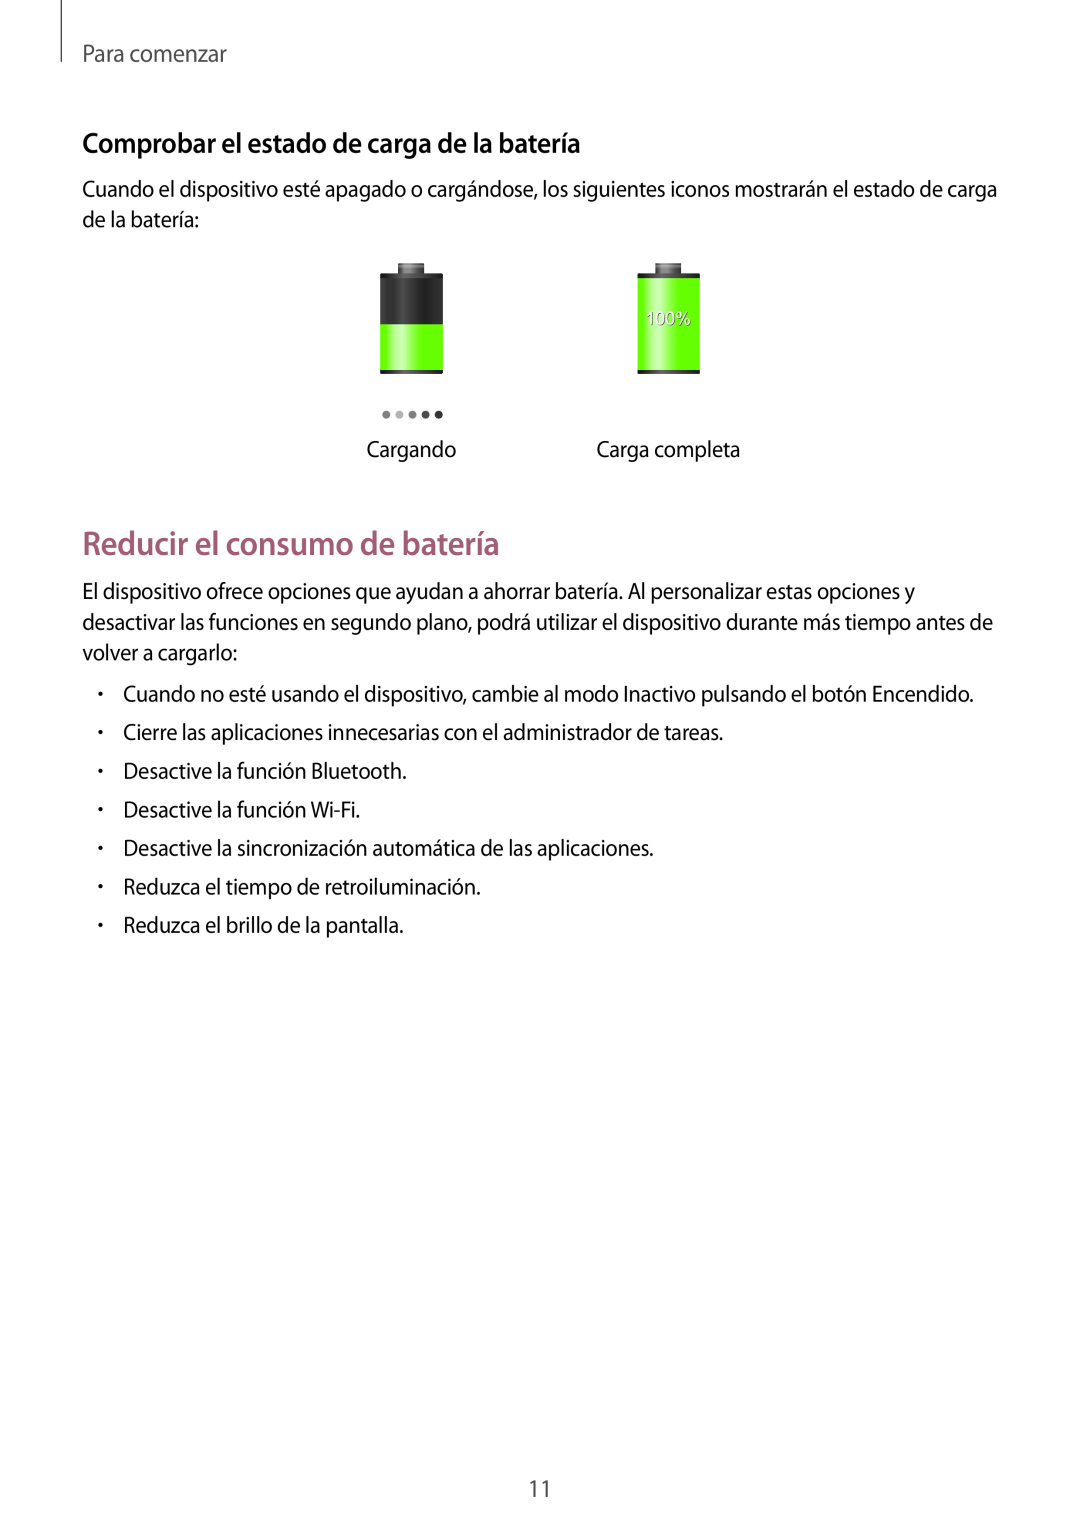 Samsung SM-T2100ZWAXEO manual Reducir el consumo de batería, Comprobar el estado de carga de la batería, Para comenzar 